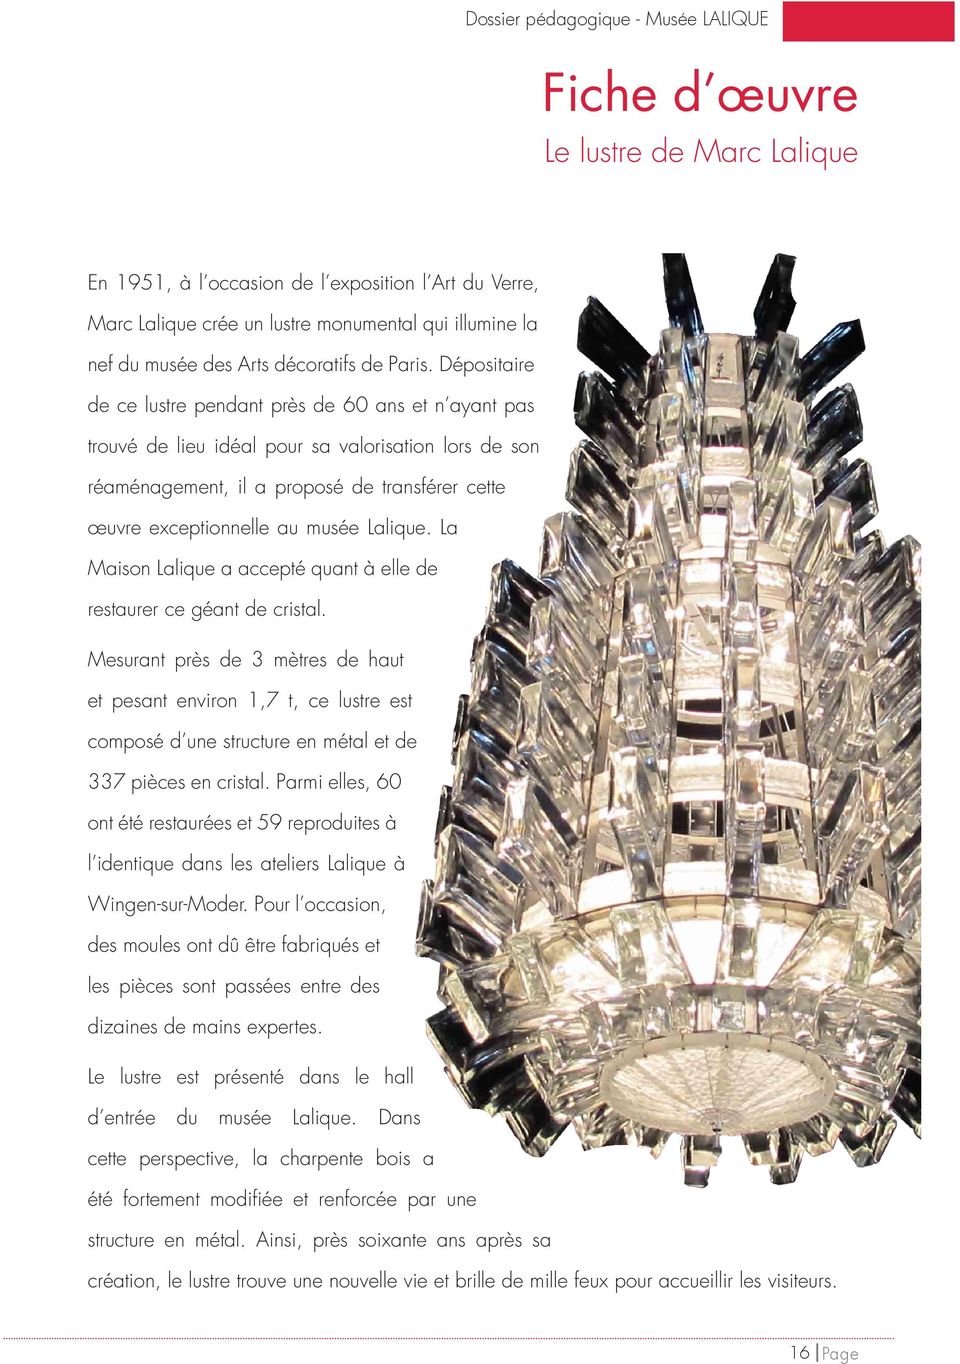 Lalique. La Maison Lalique a accepté quant à elle de restaurer ce géant de cristal.